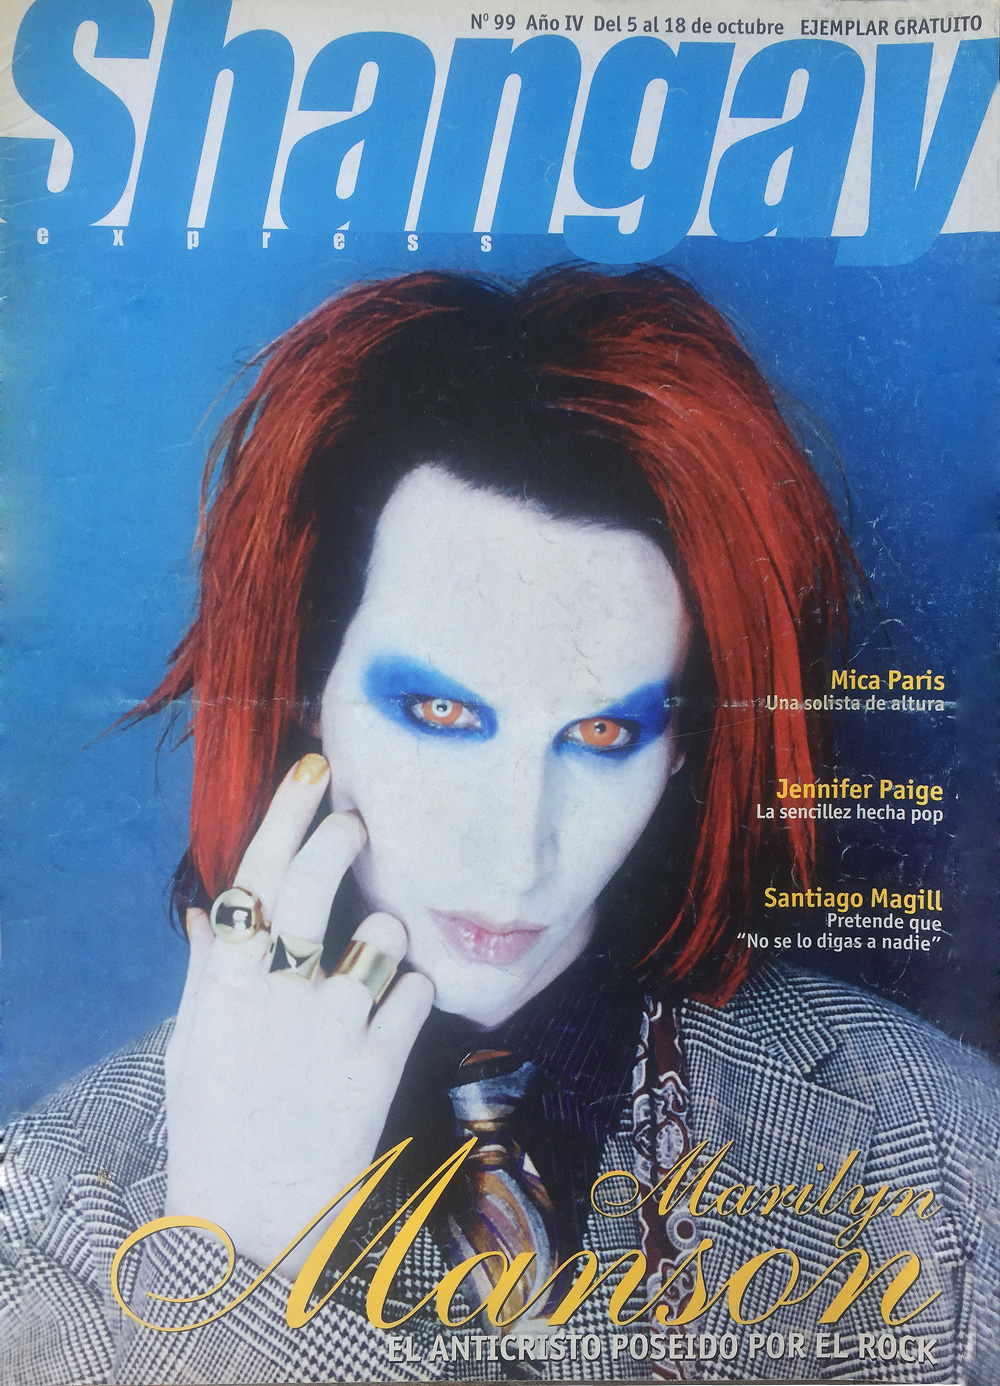 Marilyn Manson: “Nunca diferencio entre el buen y el mal gusto”